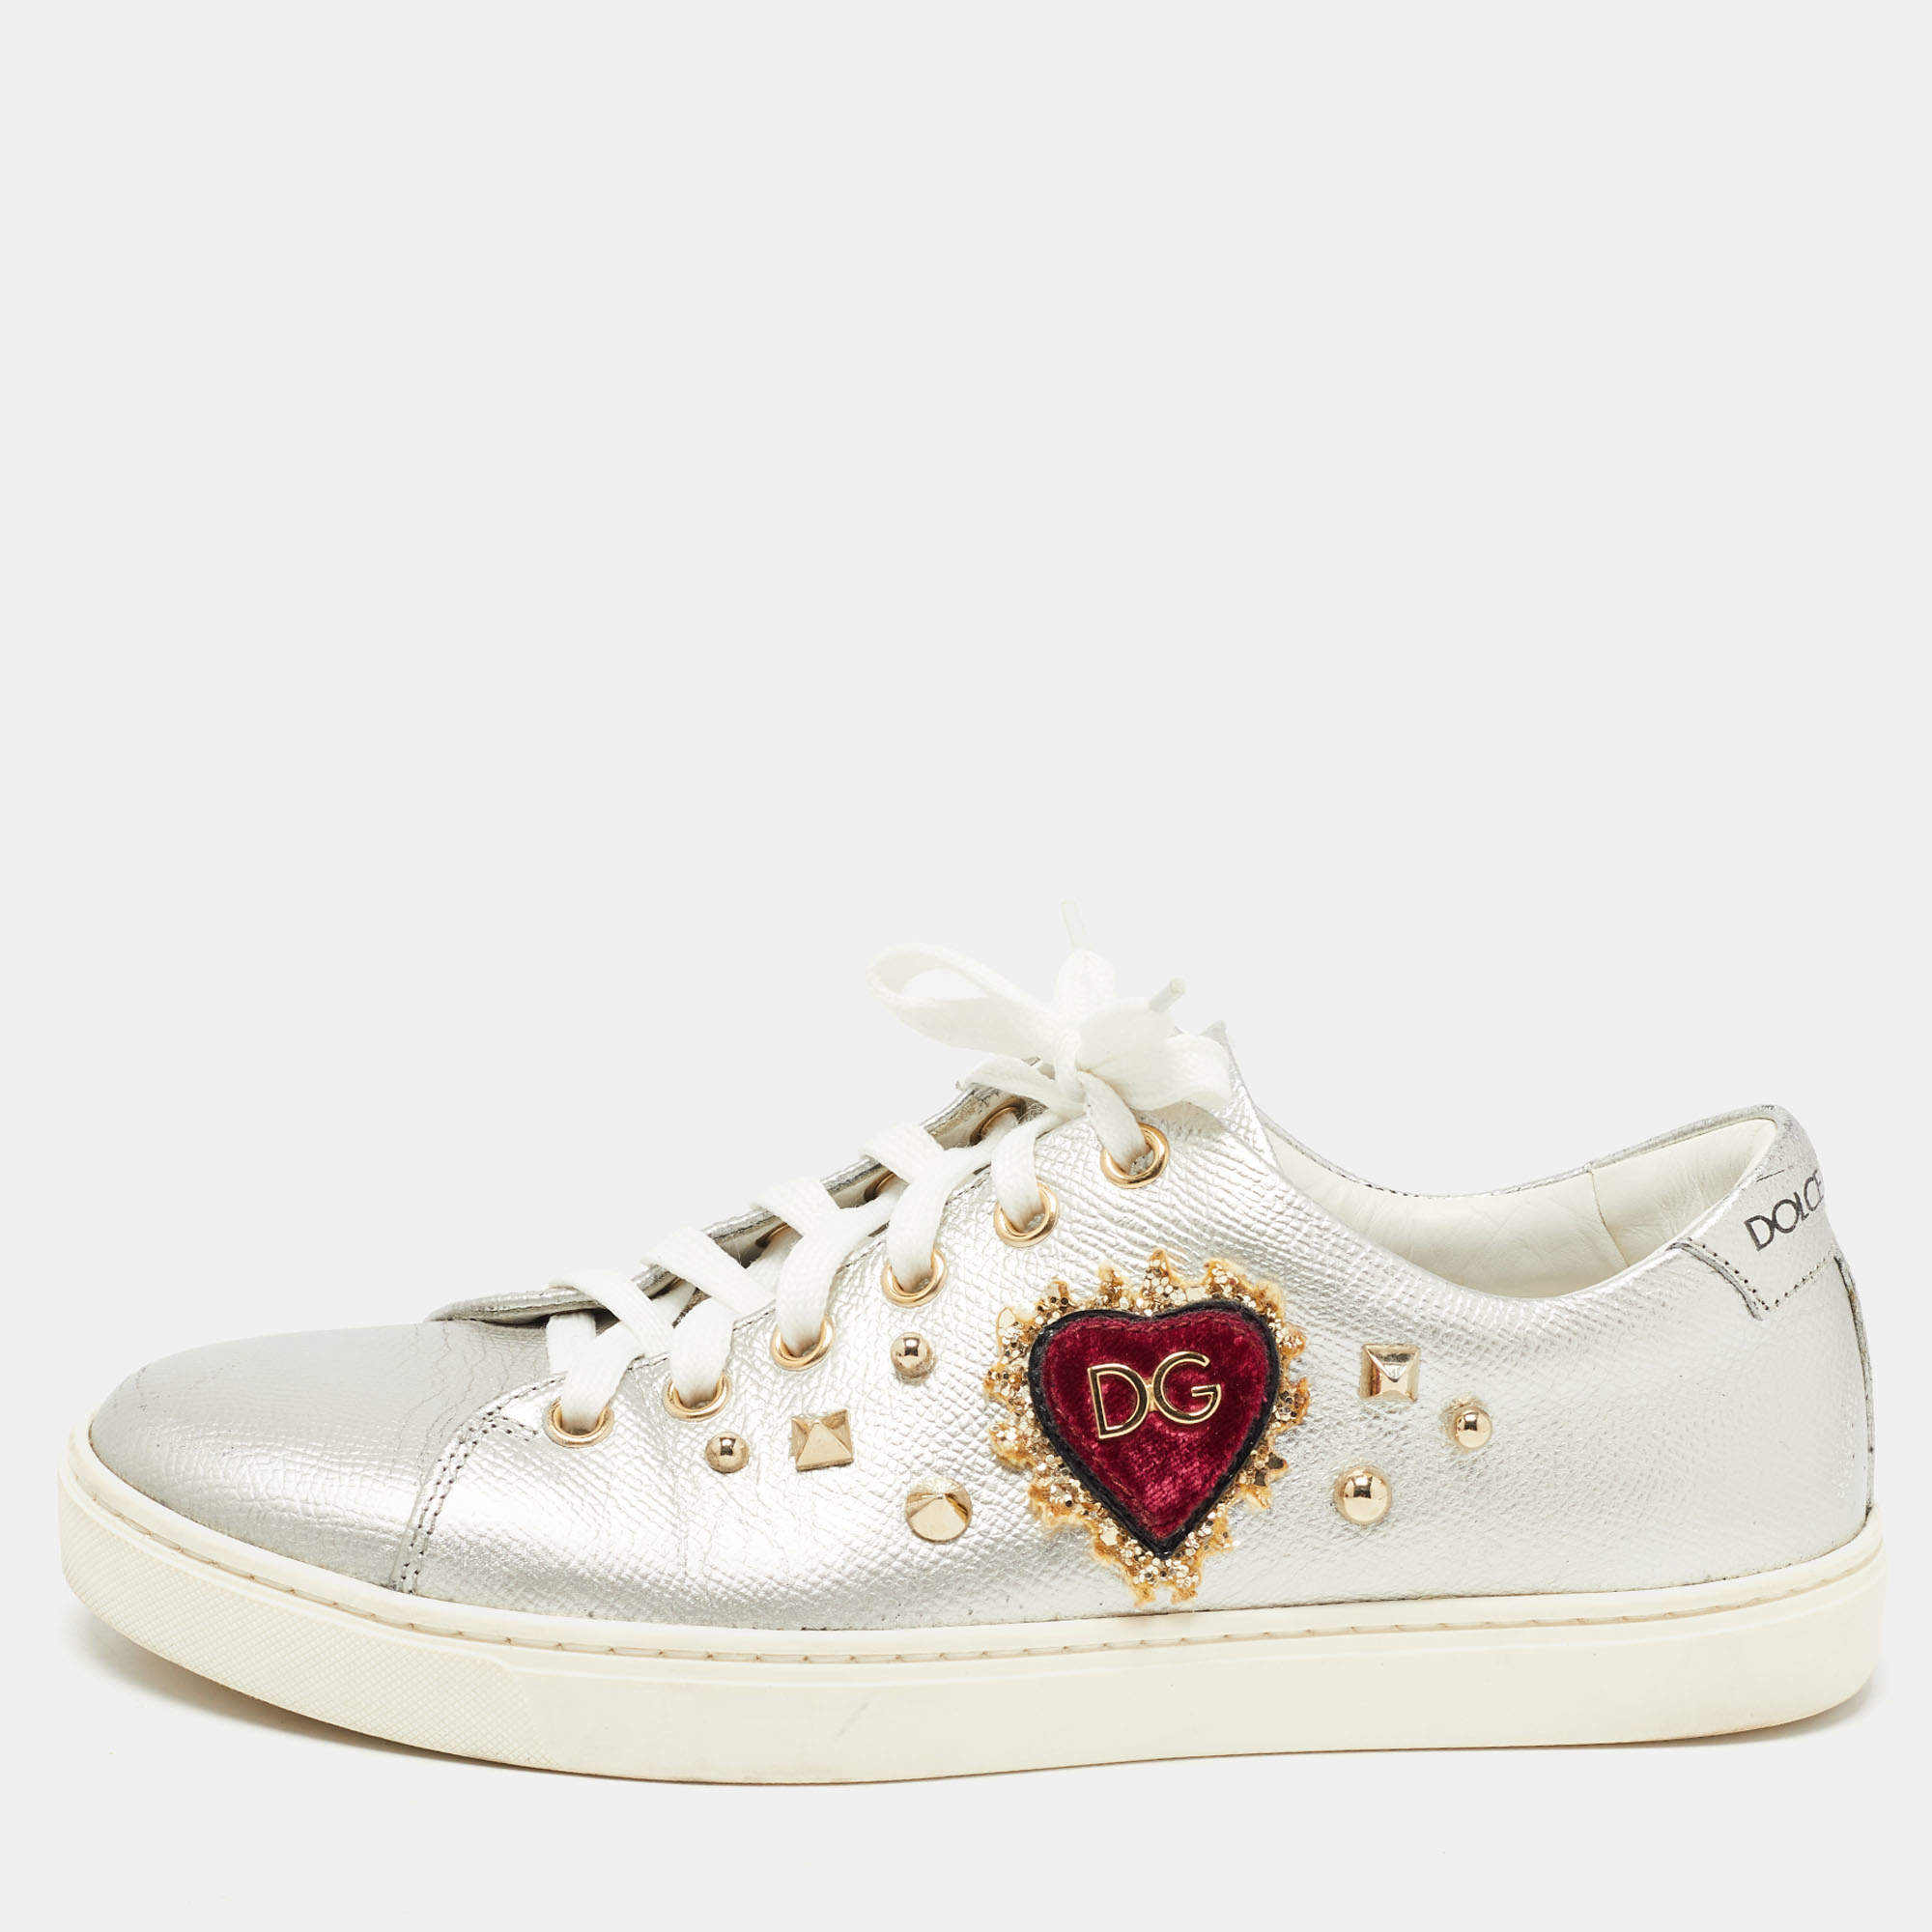 Luxury Sneakers Women Heart, White Sneakers Heart